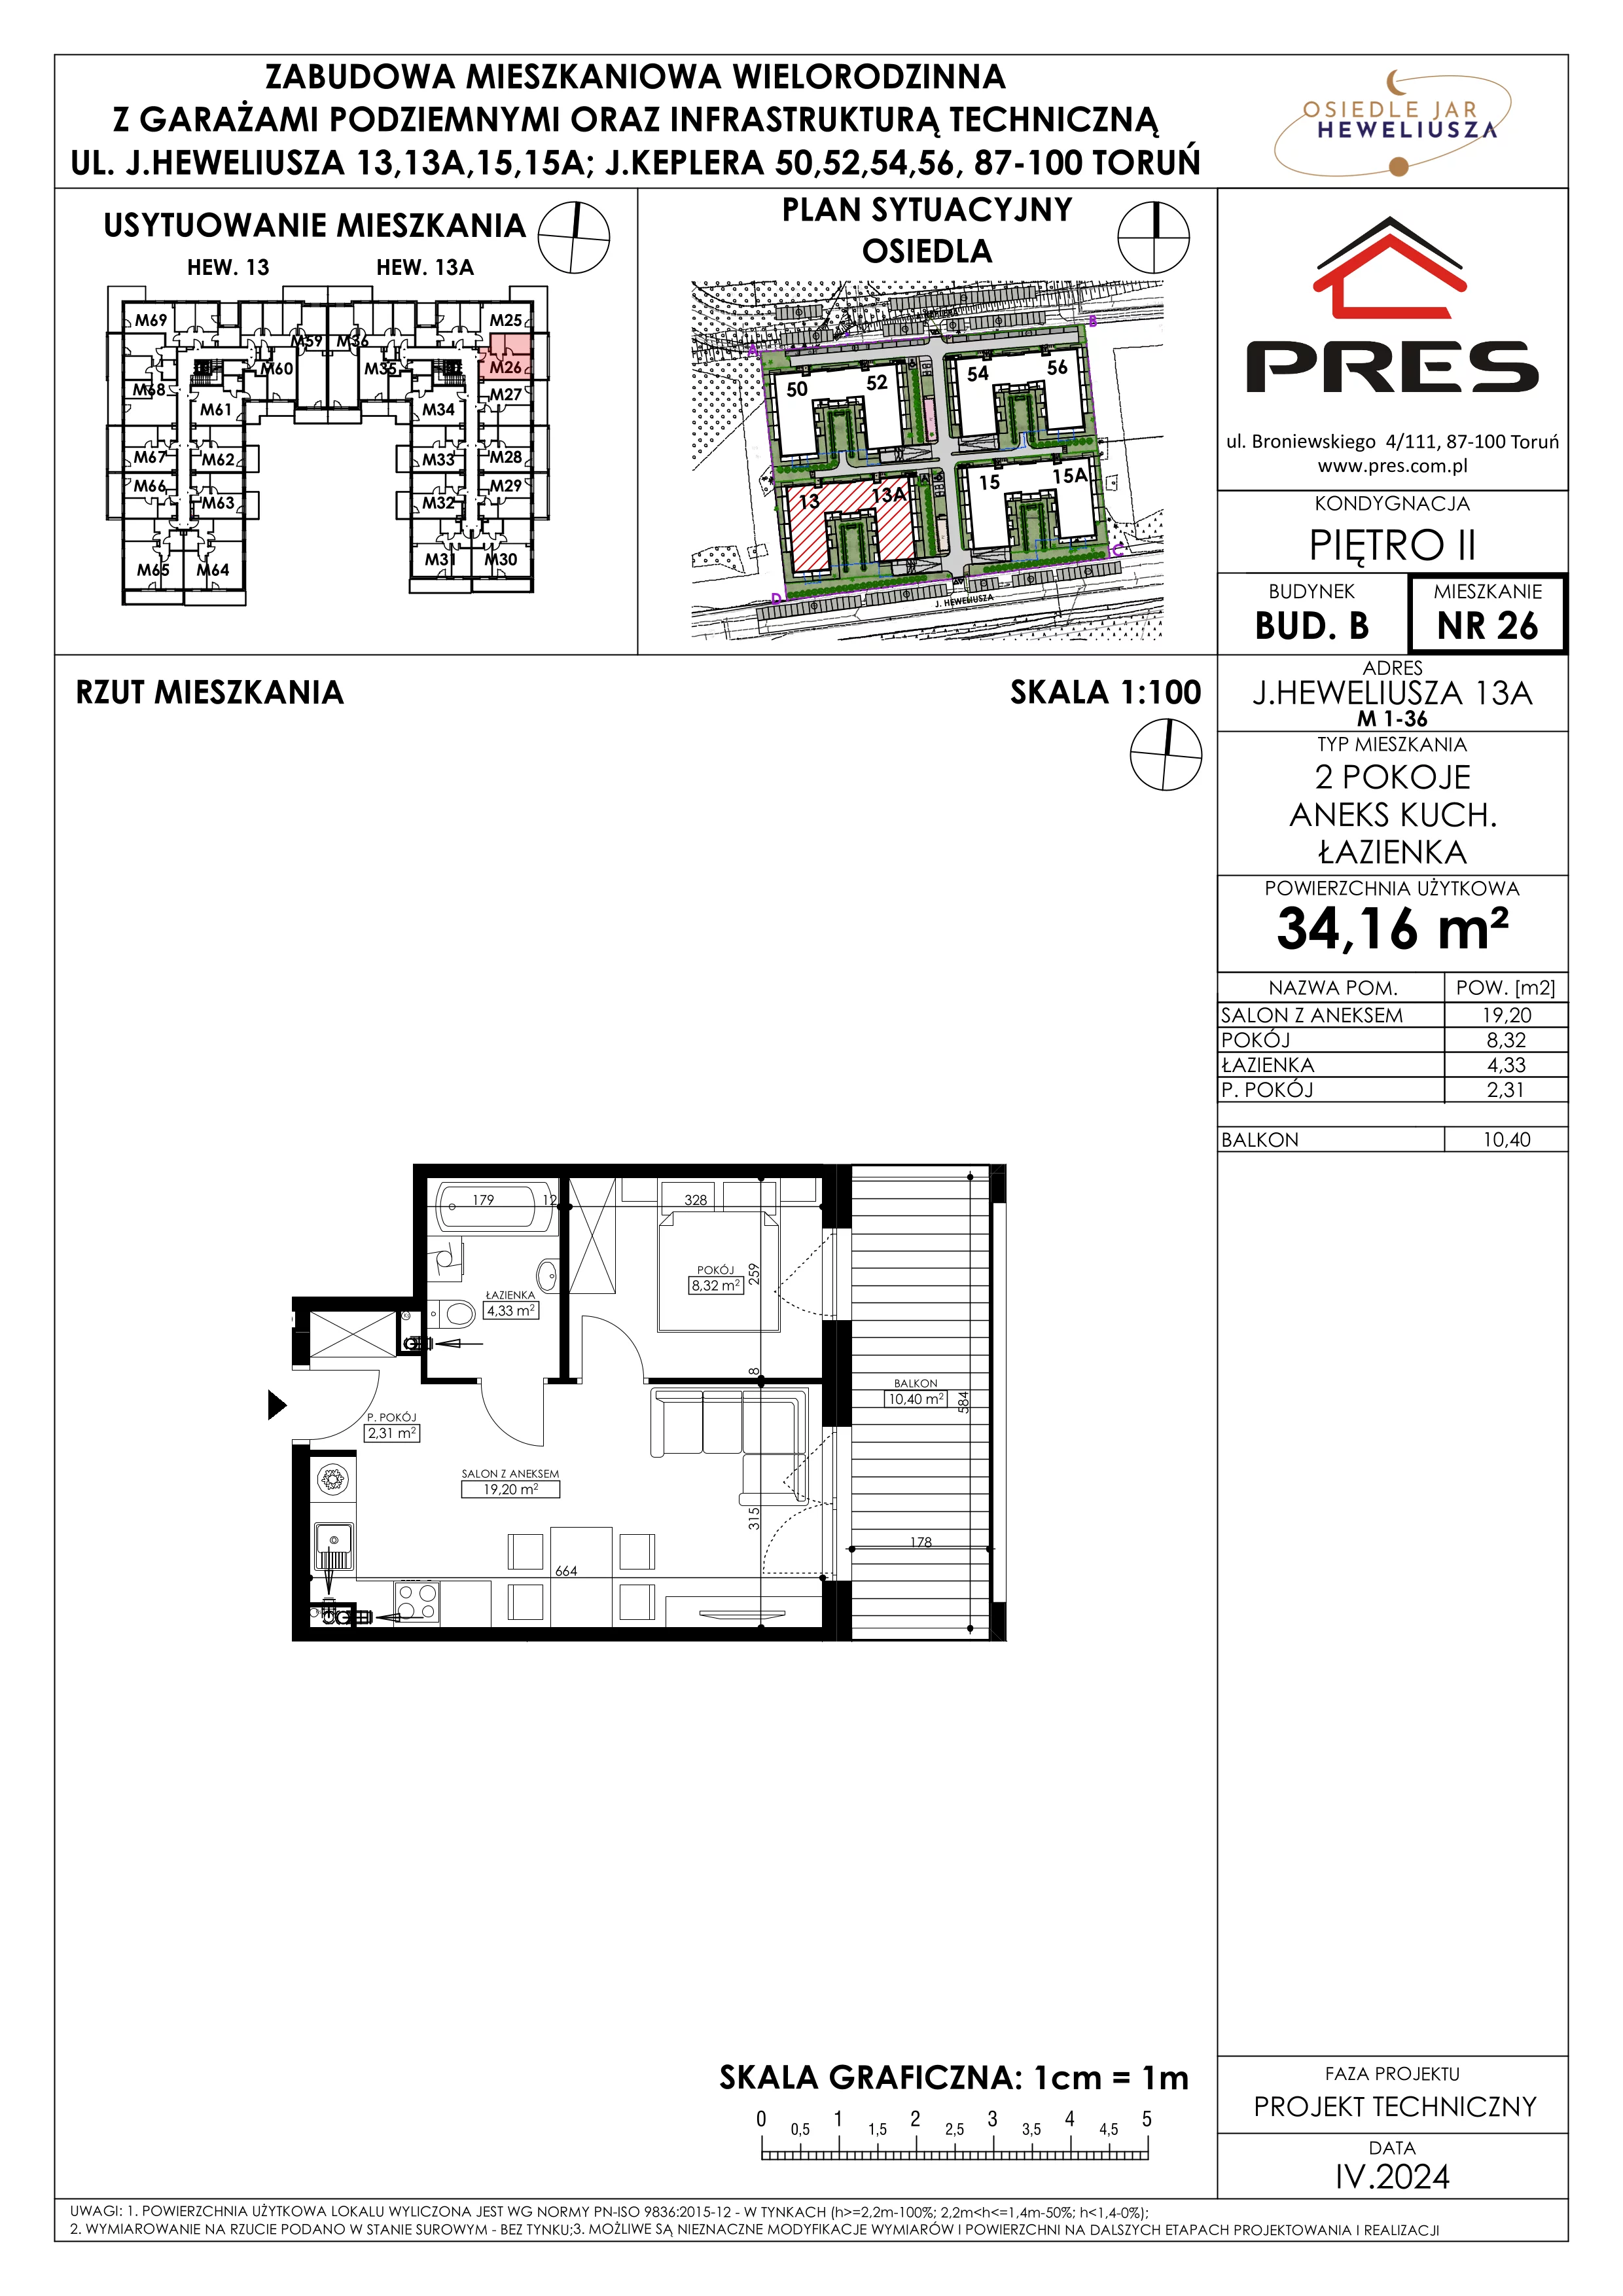 Mieszkanie 34,16 m², piętro 2, oferta nr 26, Osiedle JAR Heweliusza - Etap II, Toruń, Wrzosy, JAR, ul. Heweliusza 13-15A